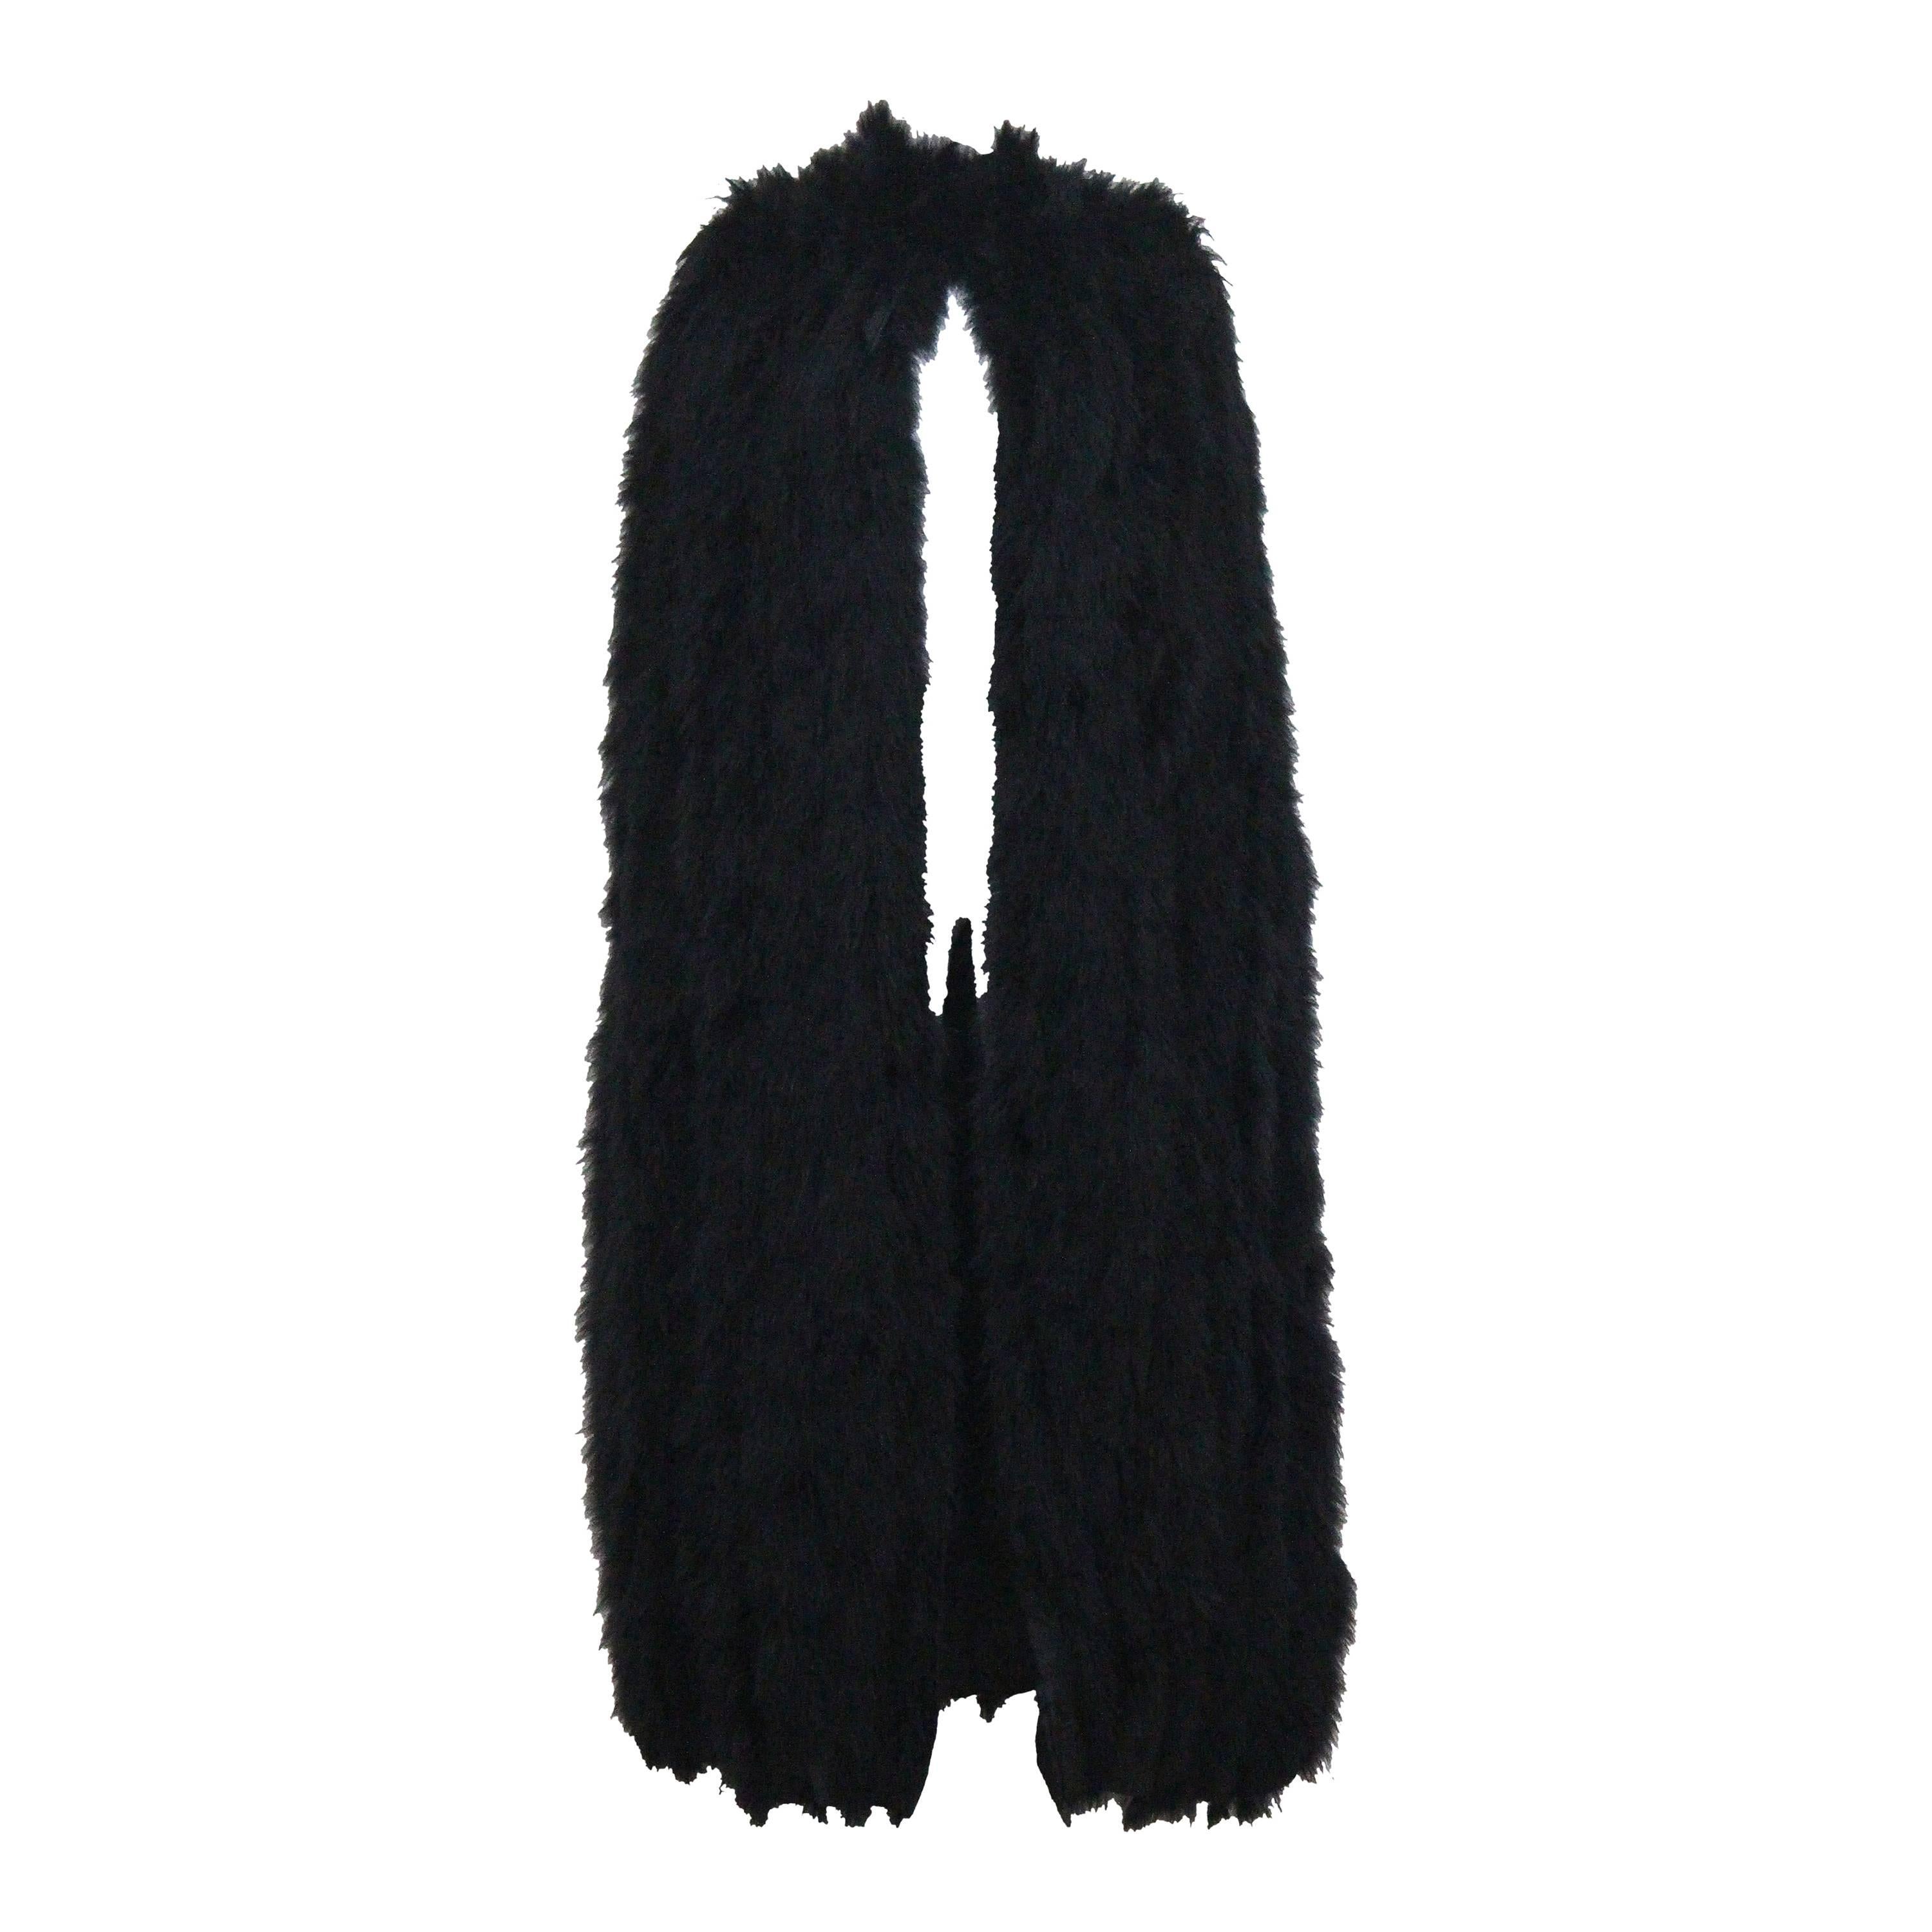 Franka, full length black marabou fur cape, c. 1960s